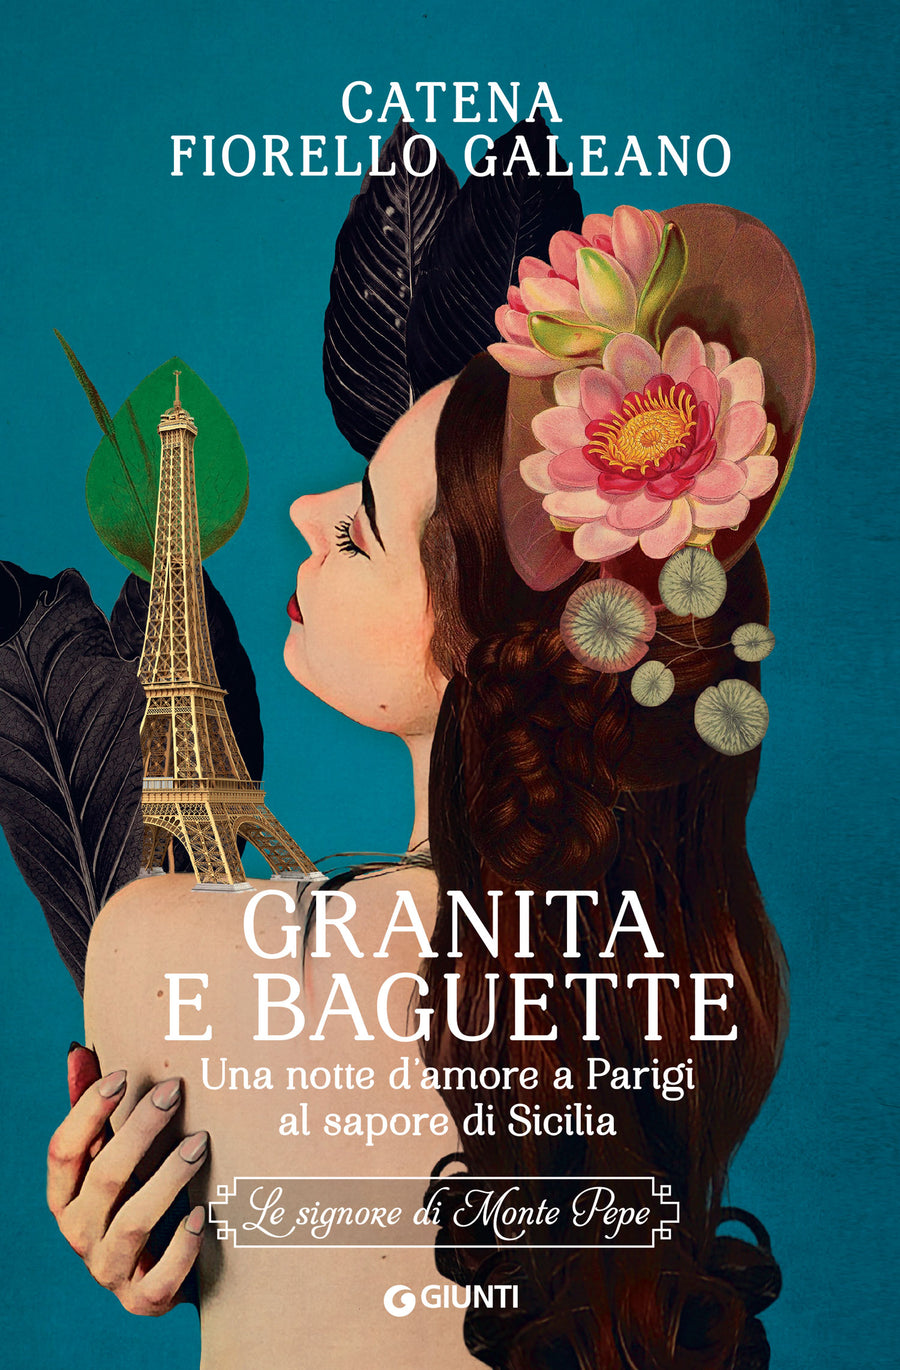 Catena Fiorello Galeano racconta "Granita e Baguette" . Appuntamenti in Sicilia